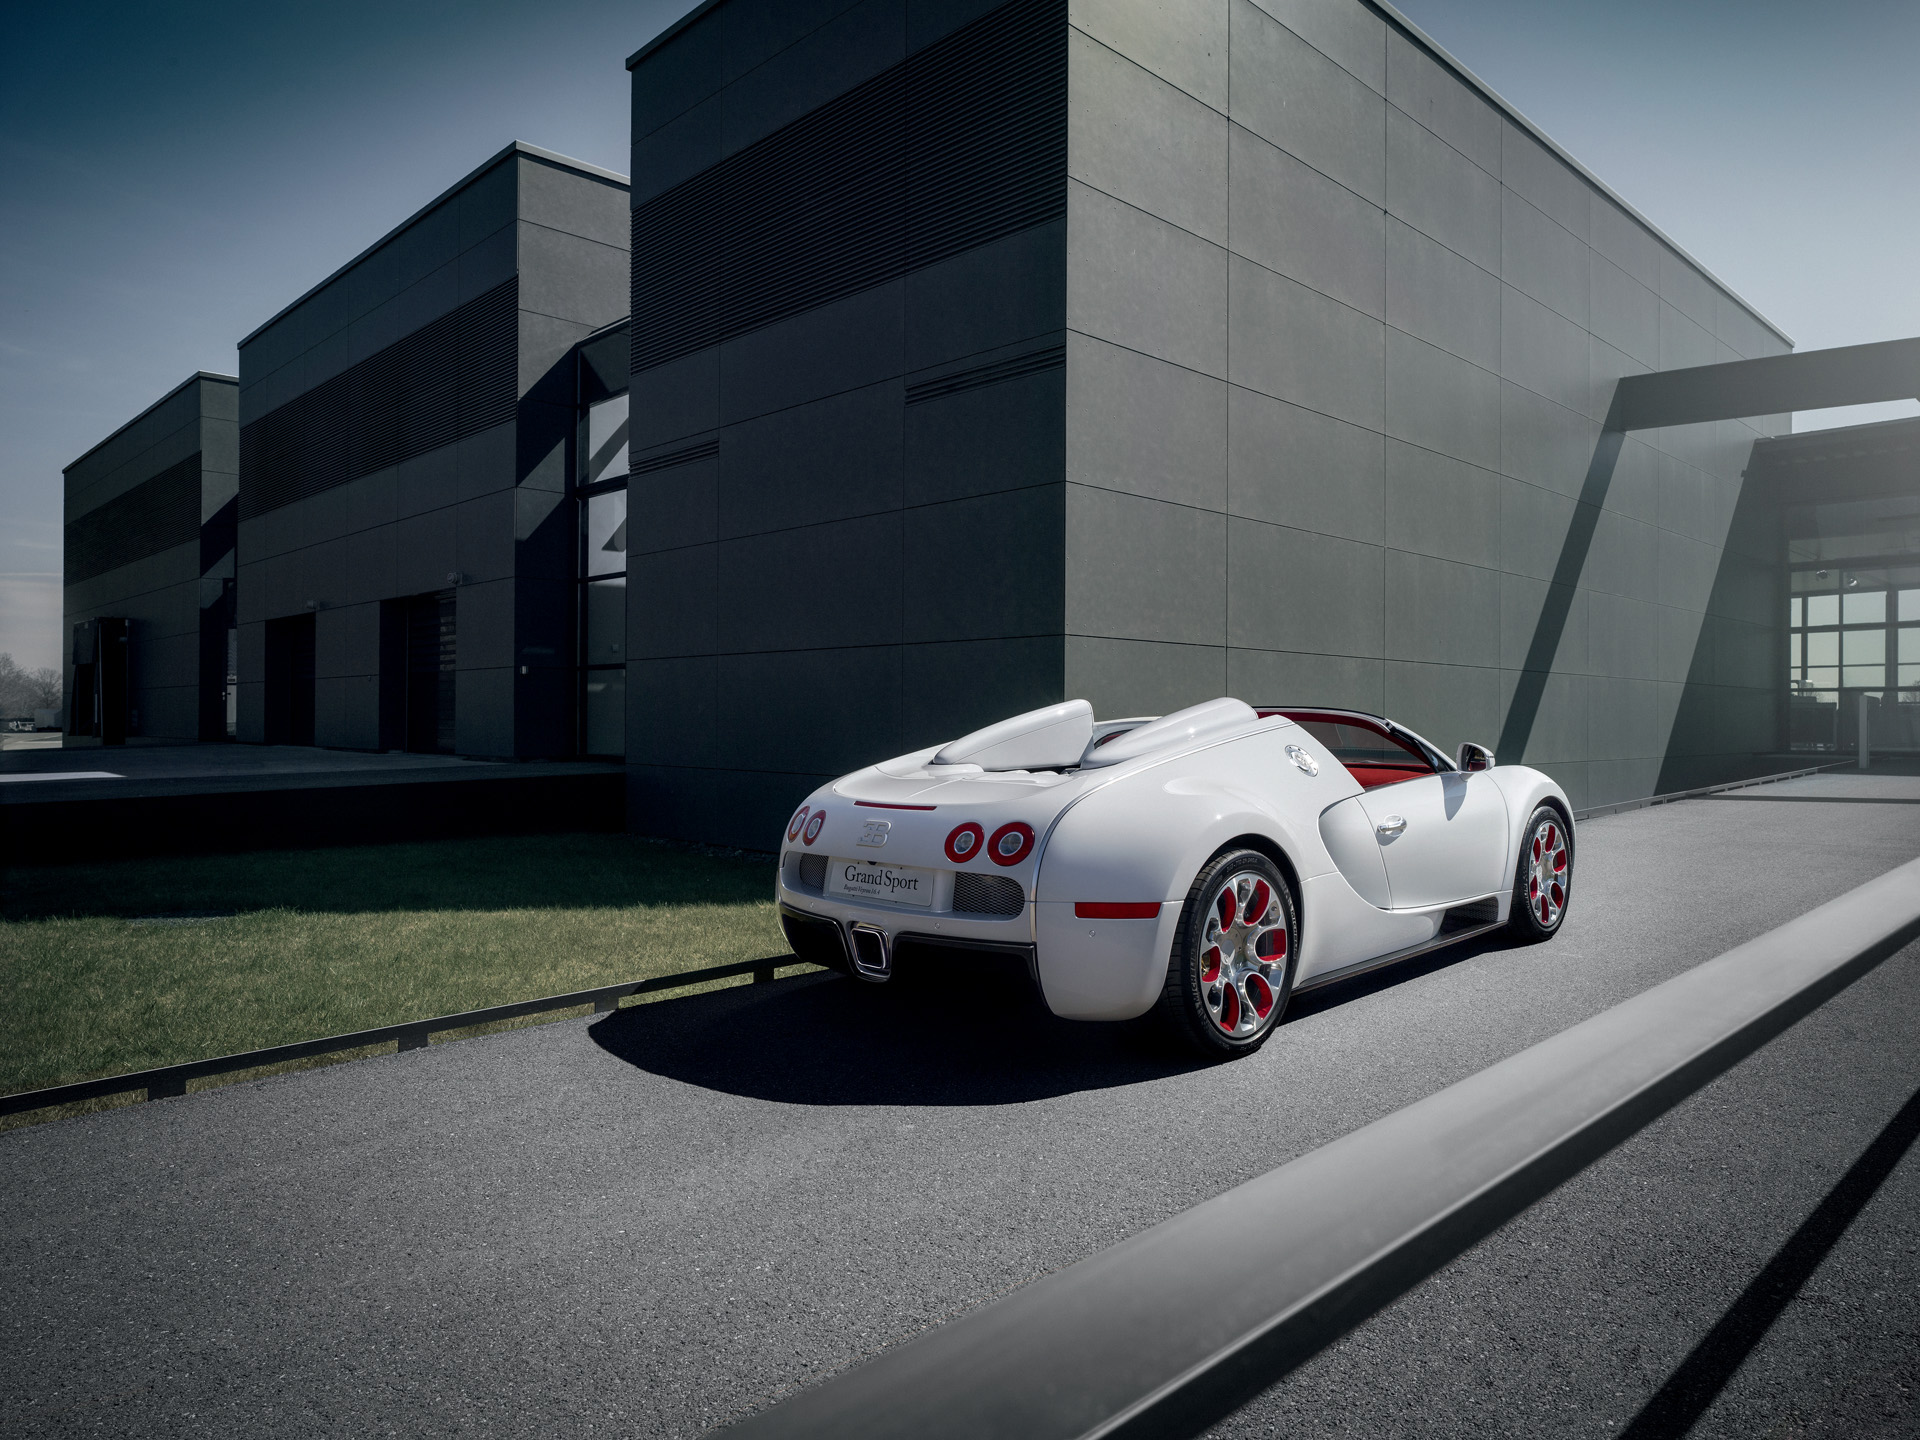  2012 Bugatti Veyron Grand Sport Vitesse Wallpaper.